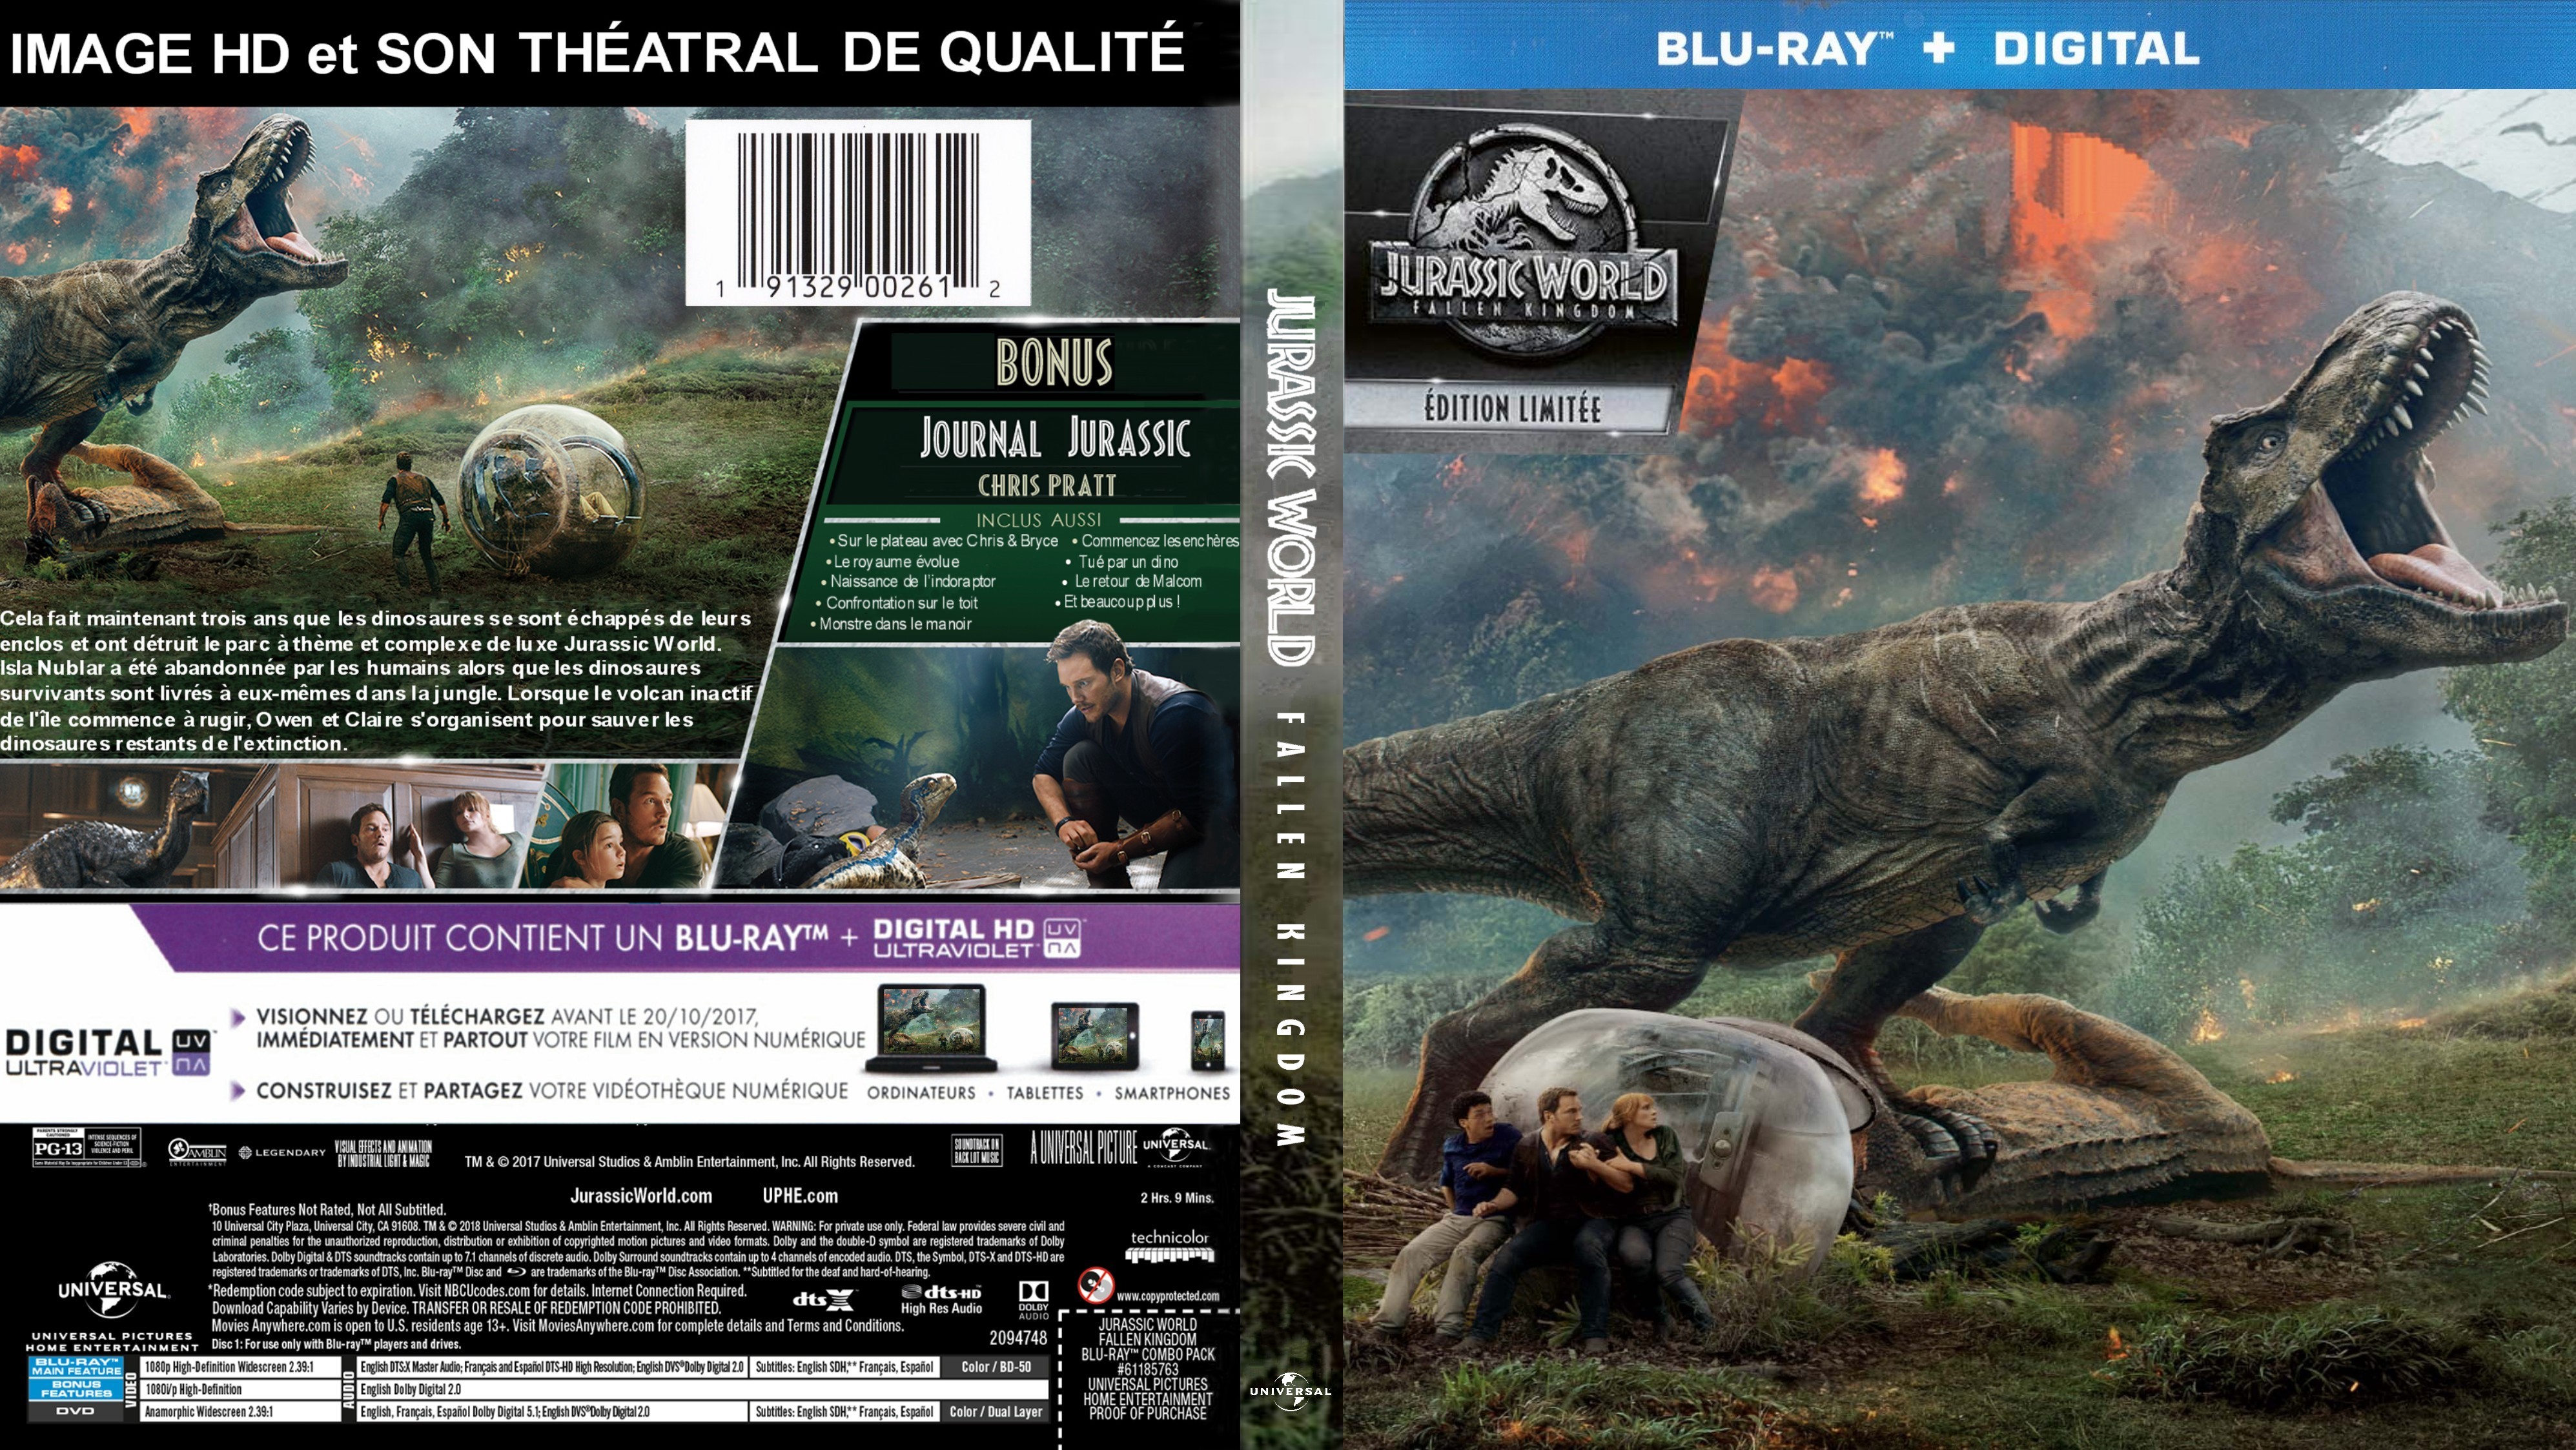 Jaquette DVD Jurassic World Fallen Kingdom custom (BLU-RAY)